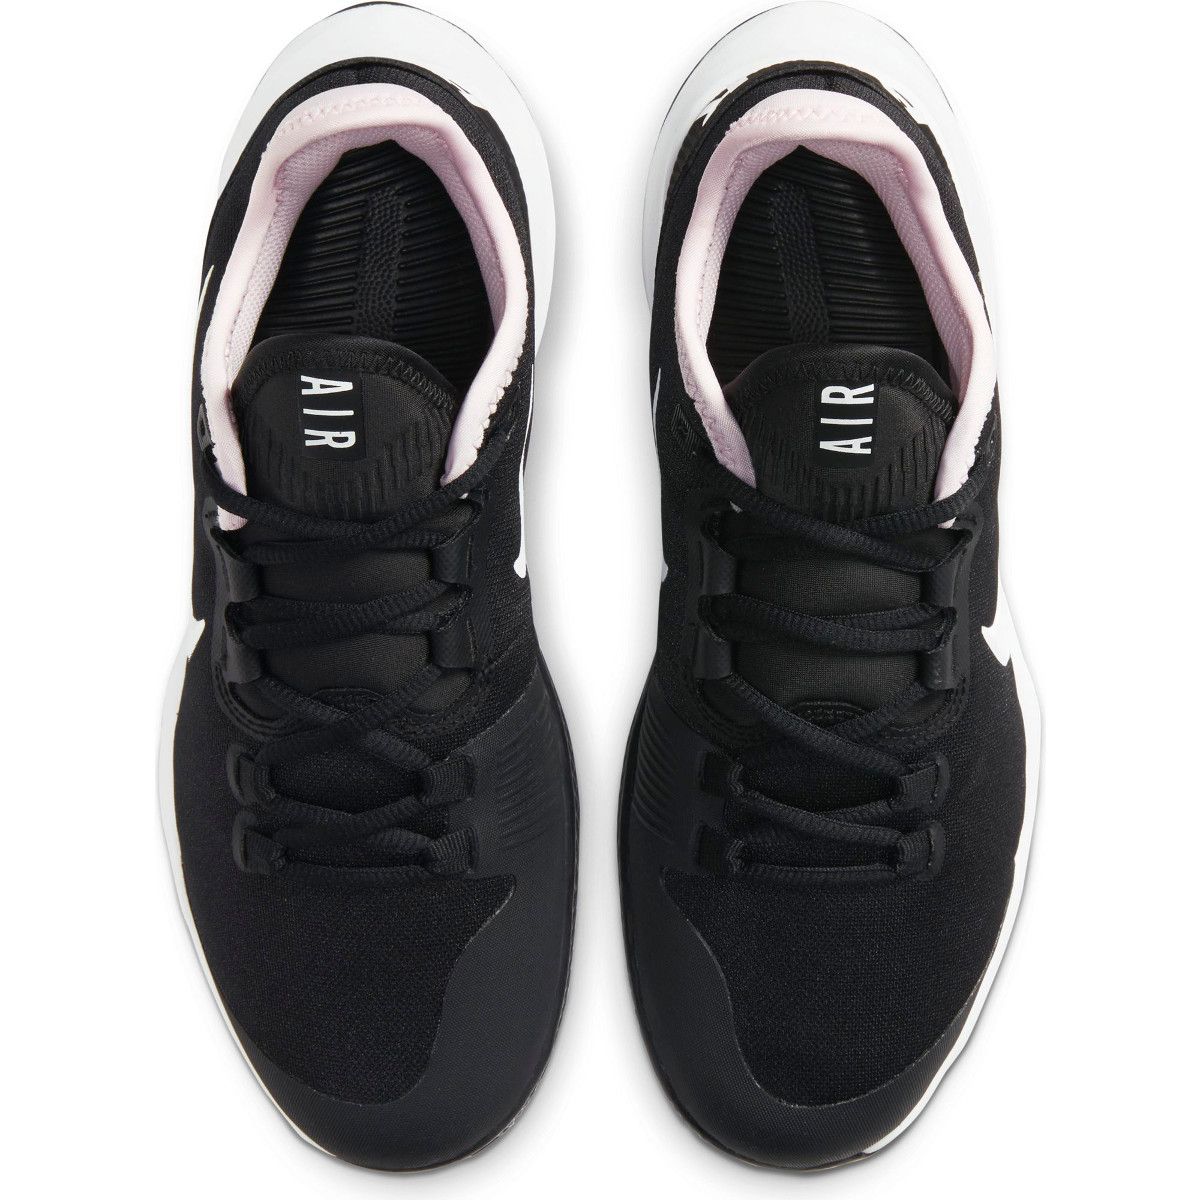 Nike Air Max Wildcard Clay Women's Tennis Shoes AO7352-003